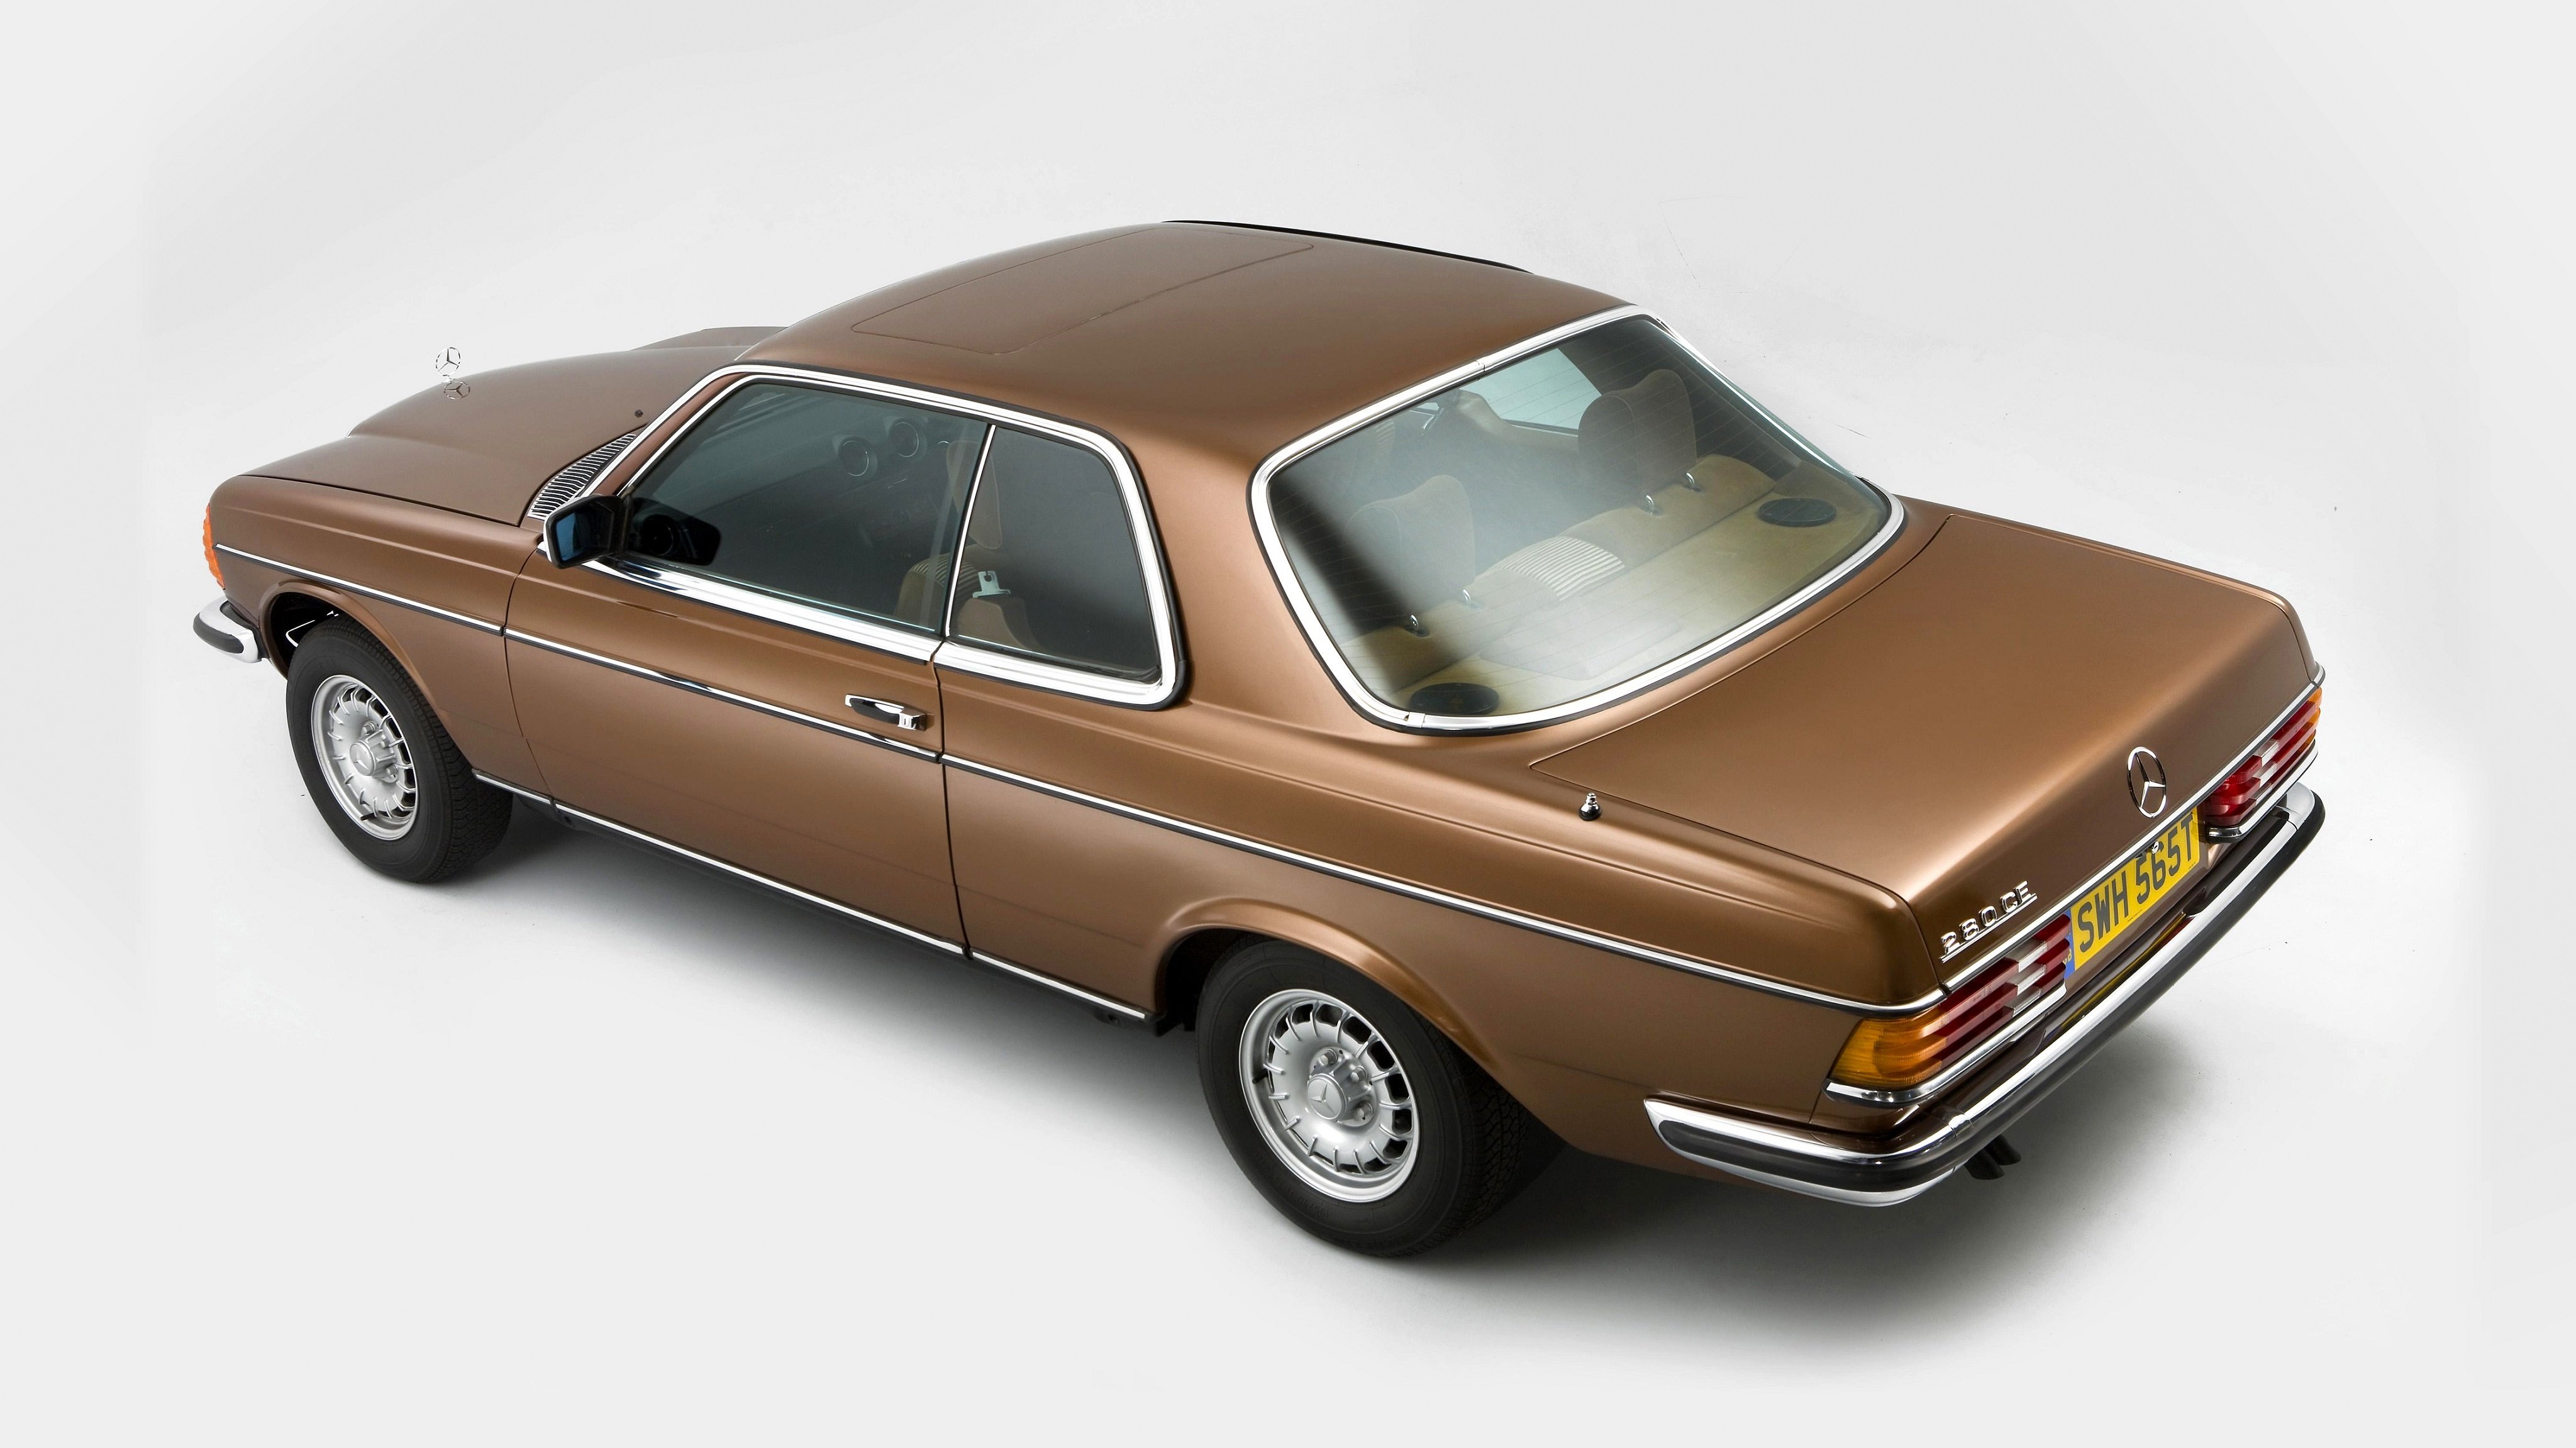 mercedes, Benz, 280, Ce, Uk spec,  c123 , 1977, Classic, Cars Wallpaper